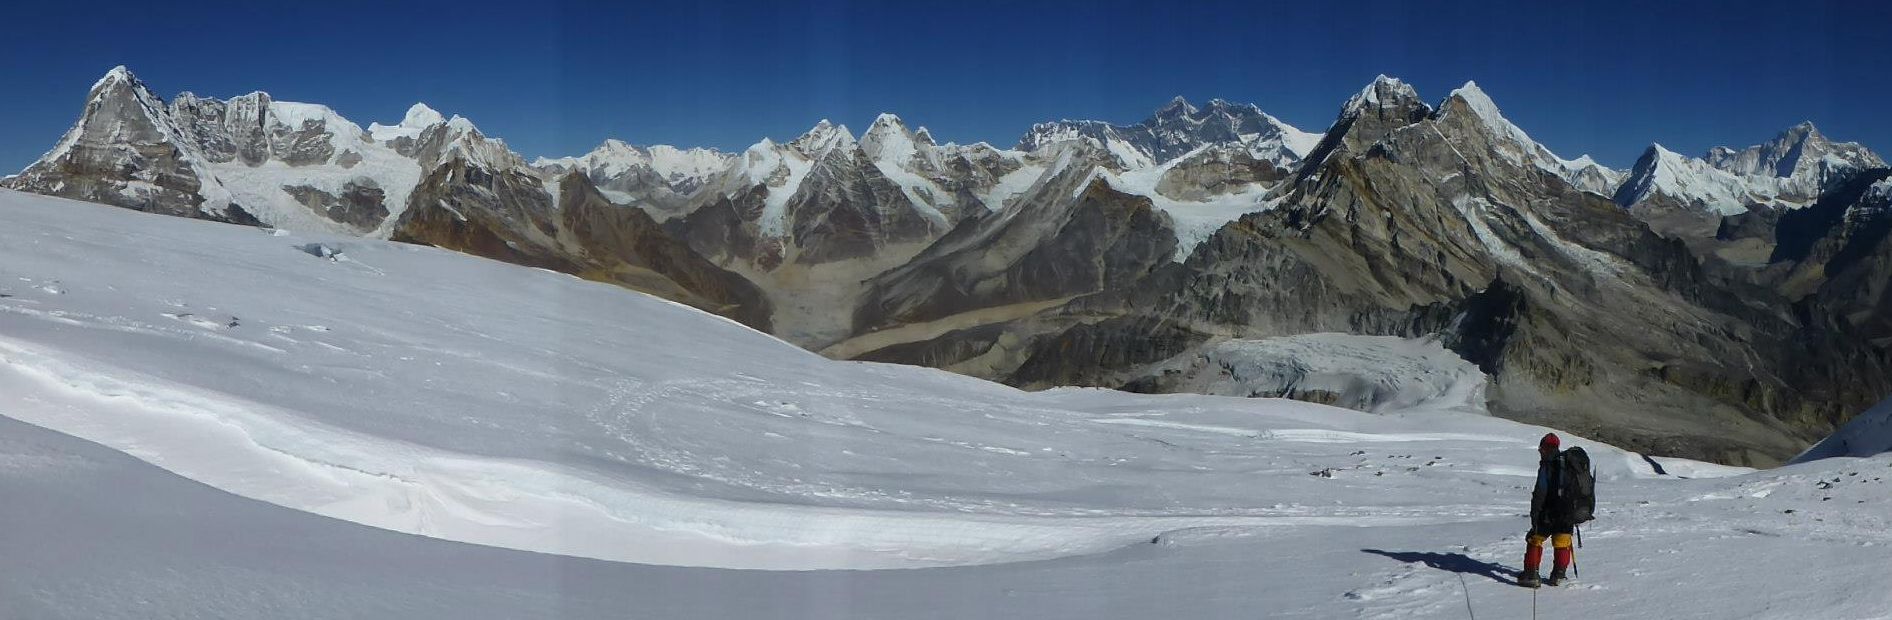 Panorama from Mera Peak